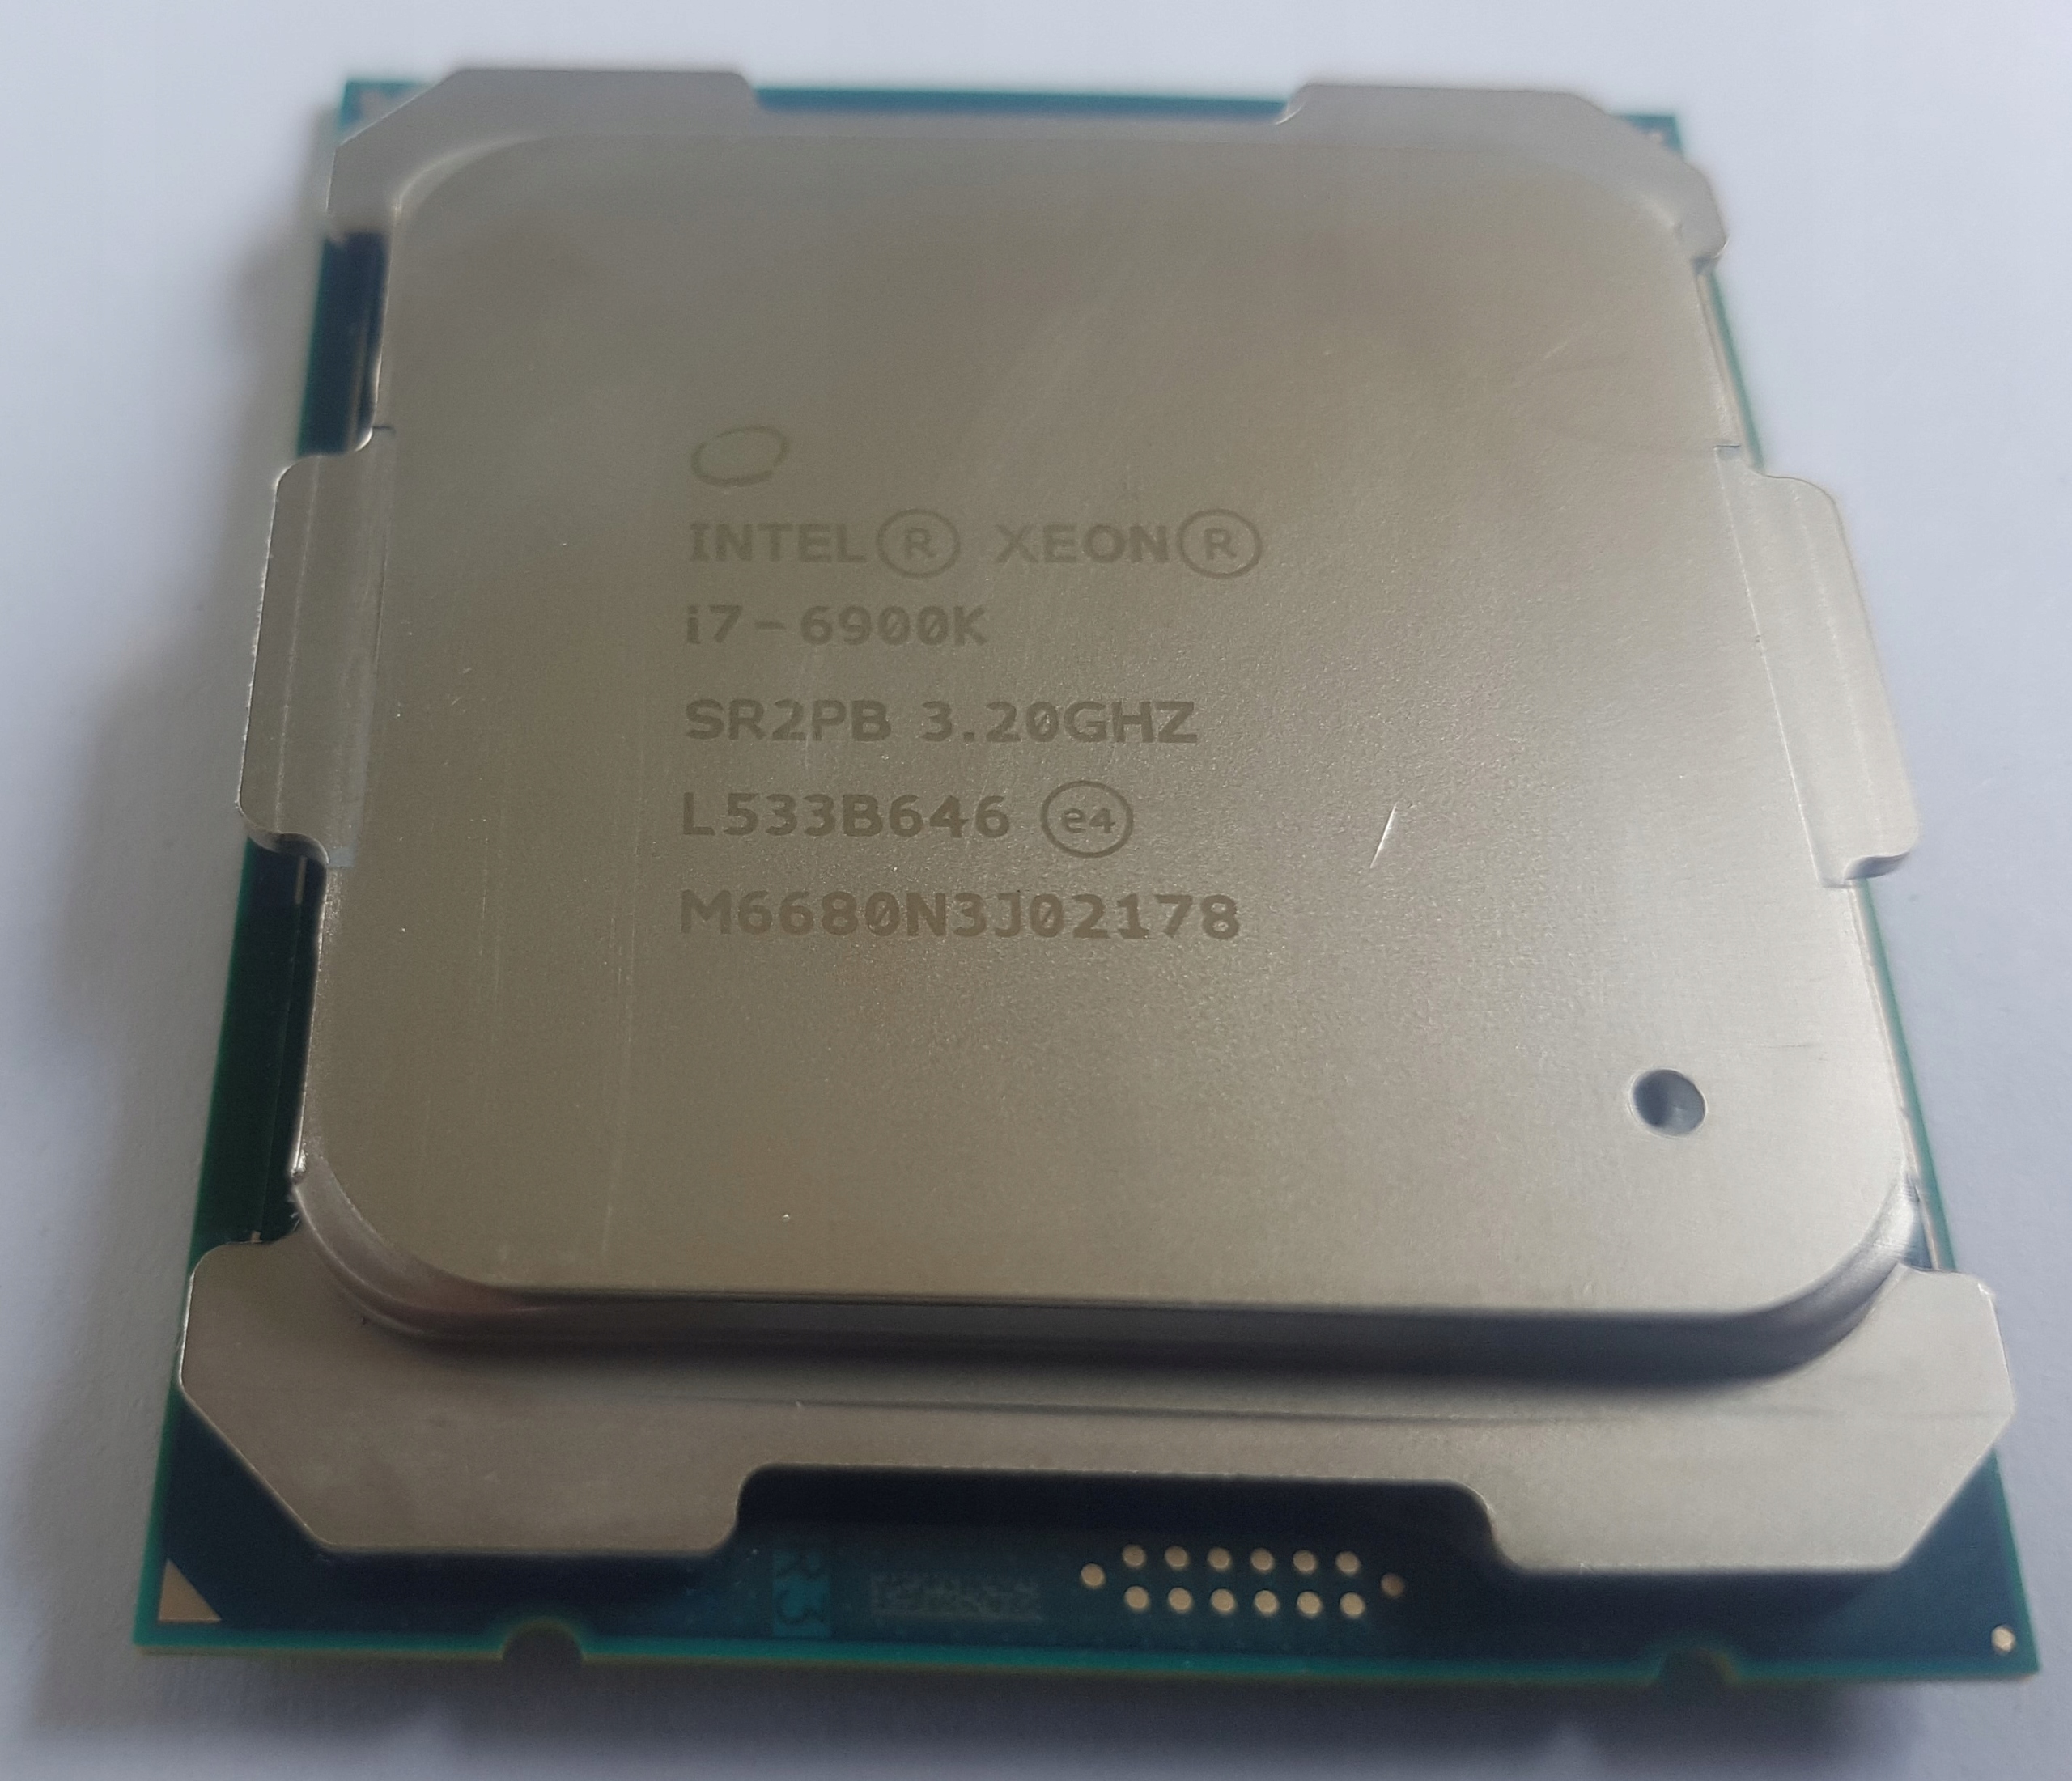 Core i7 6900K　3.2GHz LGA2011-3　SR2PB